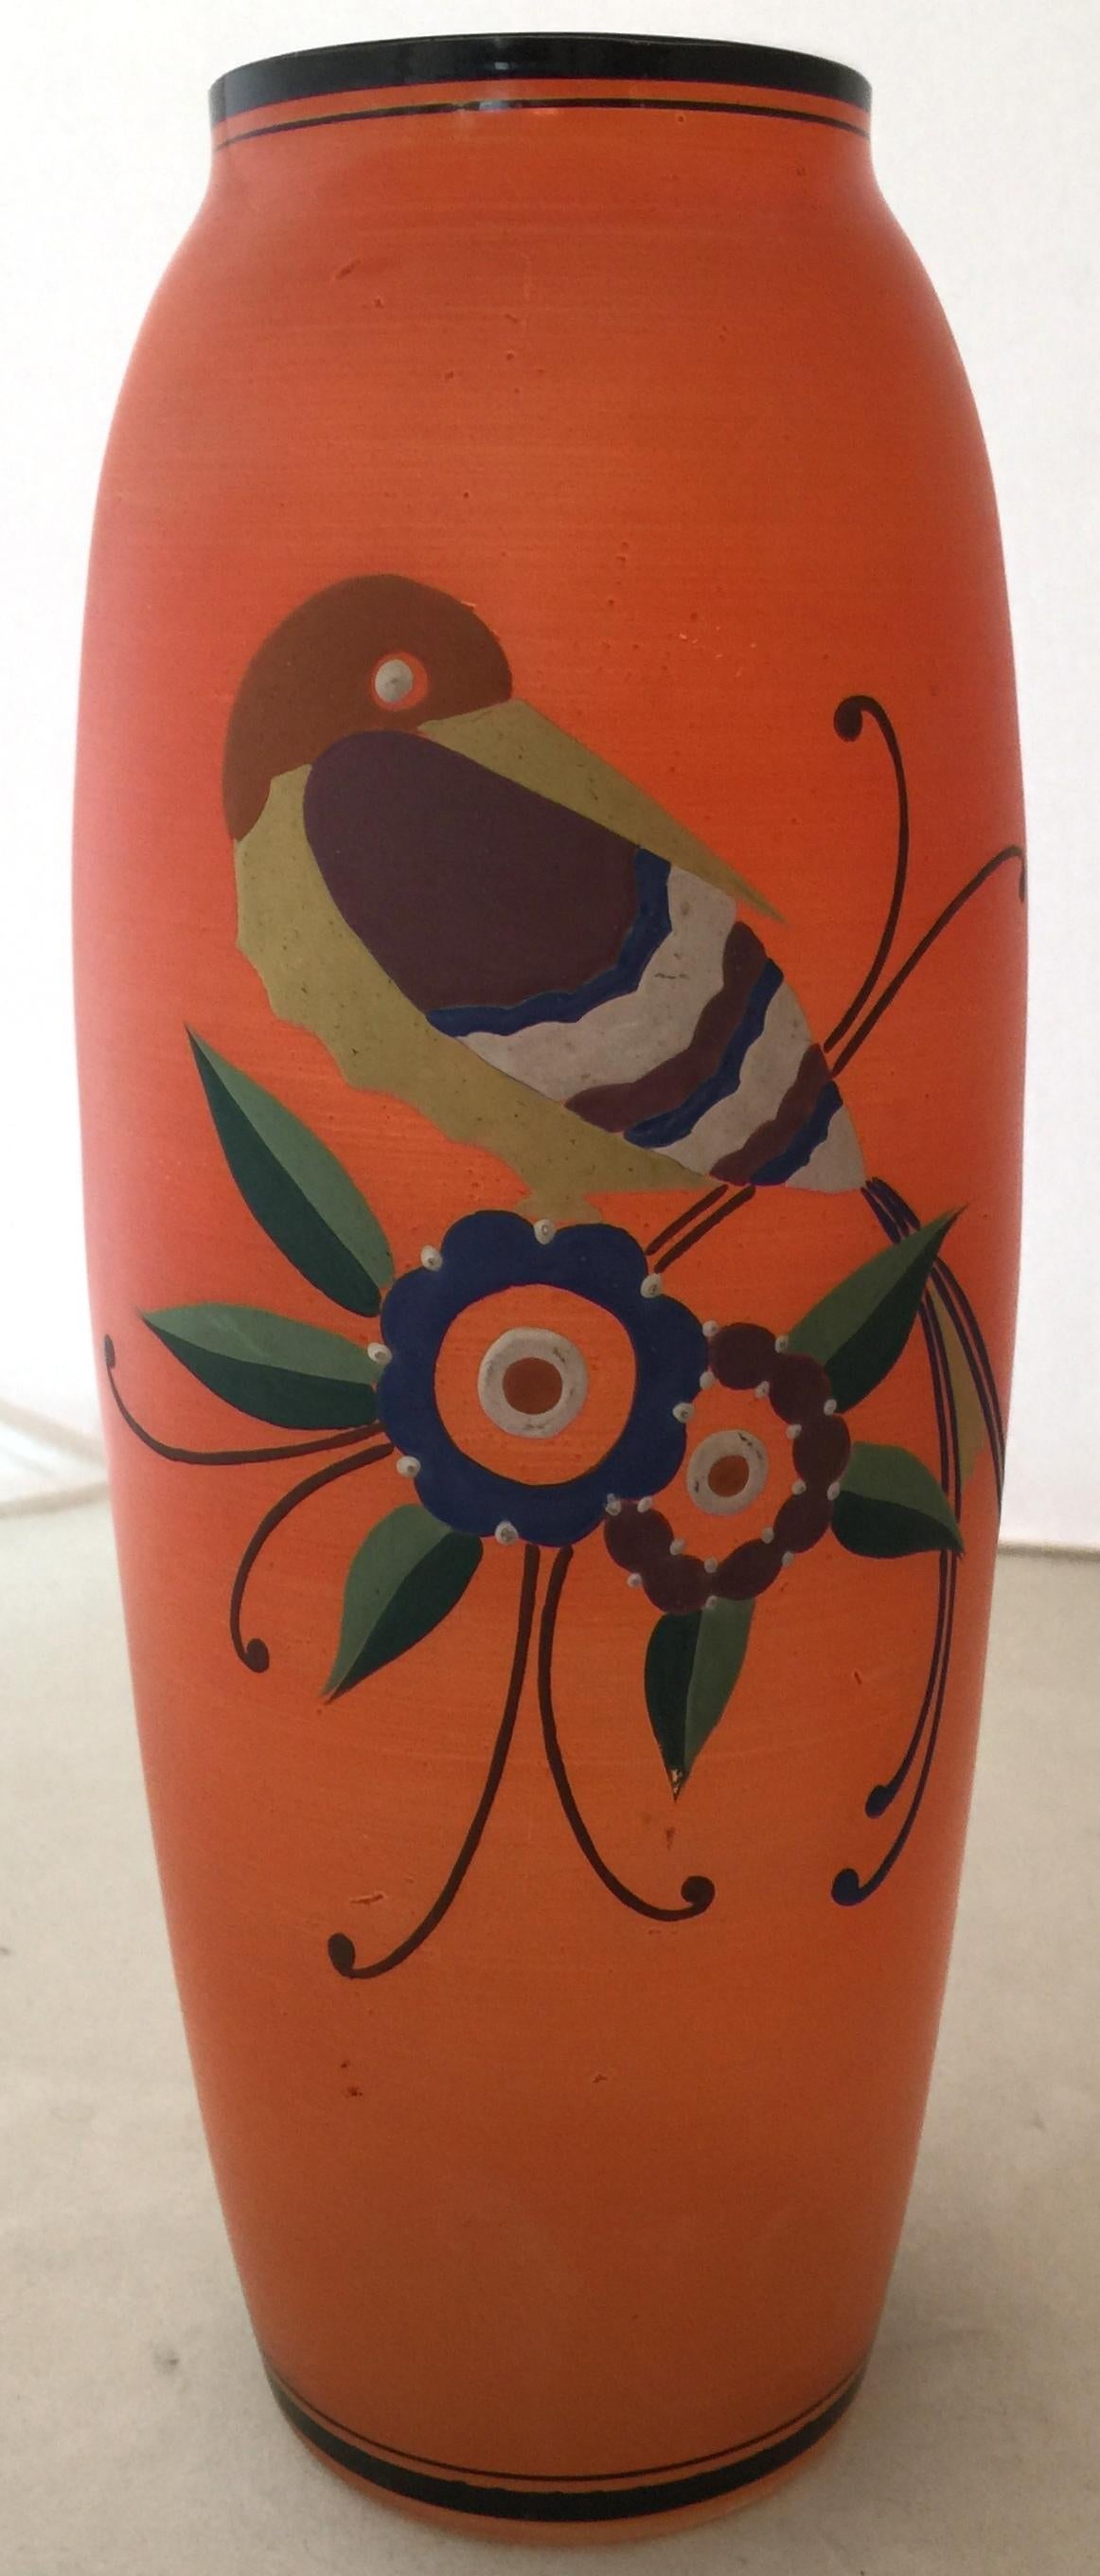 Vase
Nous sommes spécialisés dans la vente de produits Art Déco et Art Nouveau et Vintage depuis 1982. Si vous avez des questions, nous sommes à votre disposition.
En appuyant sur le bouton 